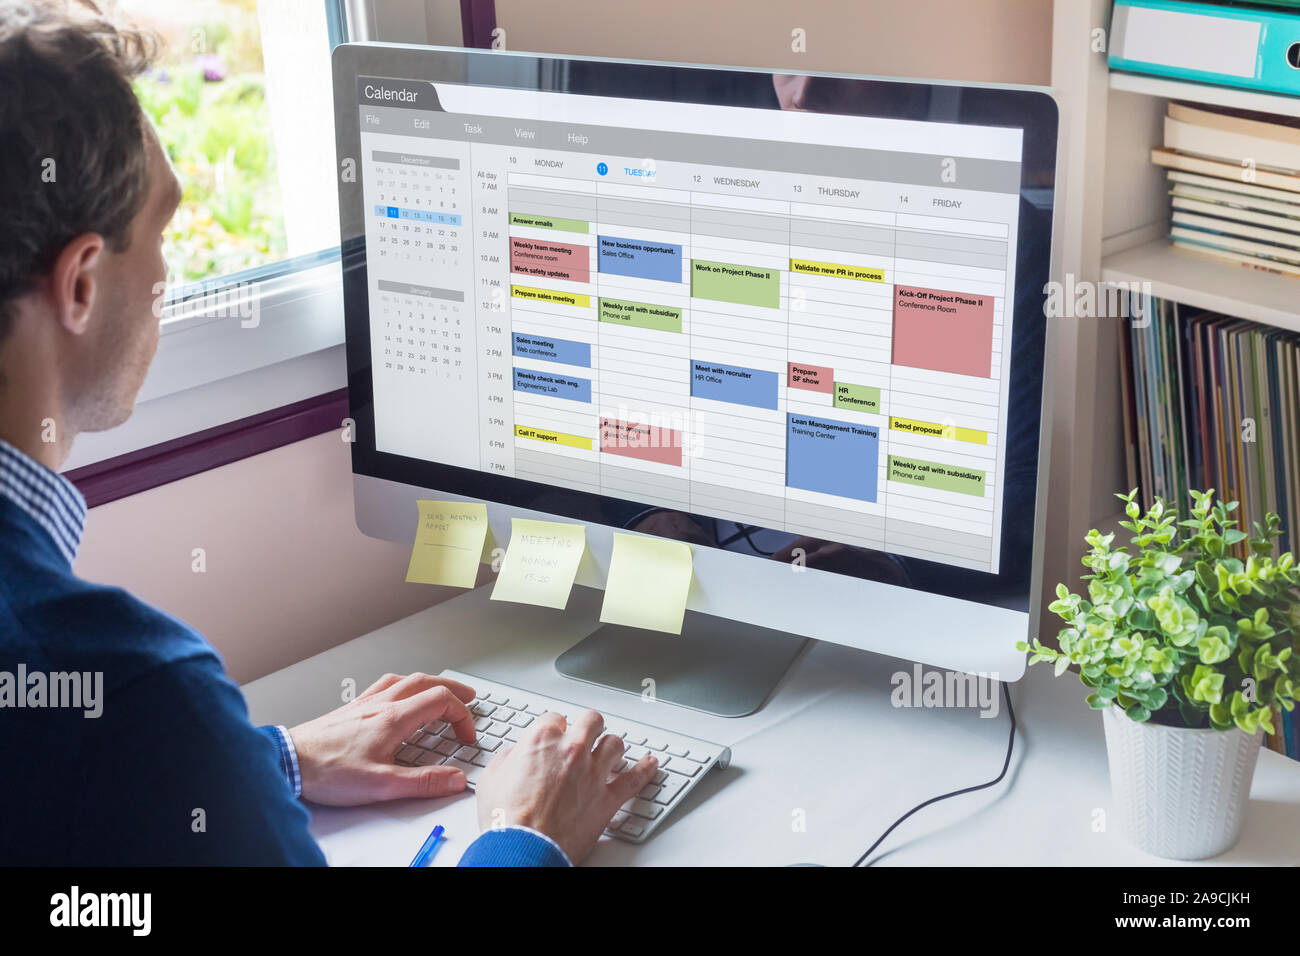 Kalender Software Übersicht Terminkalender von Manager mit vielen Besprechungen, Aufgaben und Termine während der Woche, Zeitmanagement Organisation am Arbeitsplatz co Stockfoto